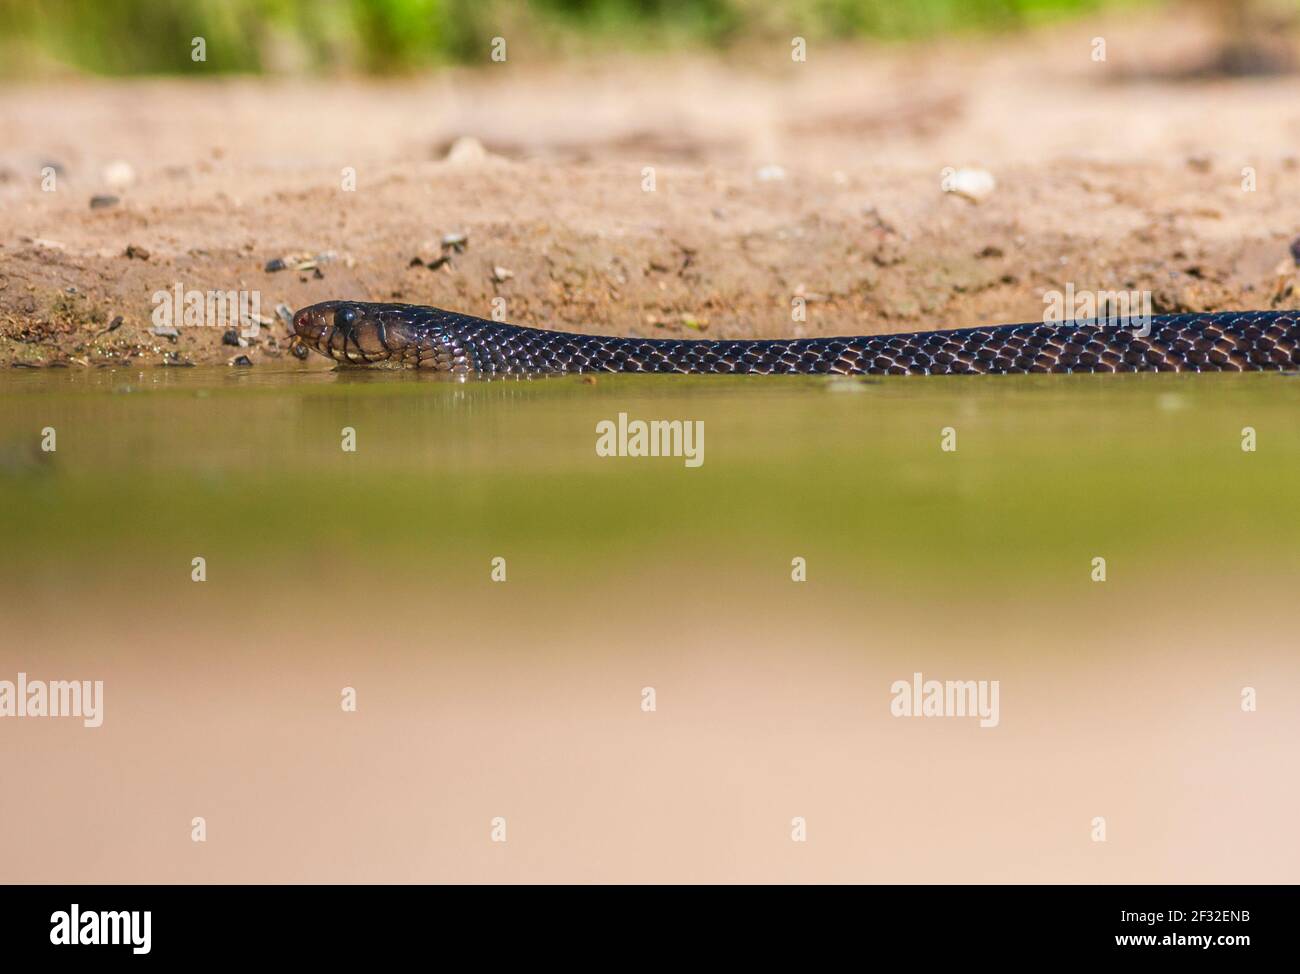 Texas Indigo Snake, Drymarchon melanurus erebennus, coming for water to a pond in South Texas. Texas indigo snakes prefer lightly vegetated areas. Stock Photo